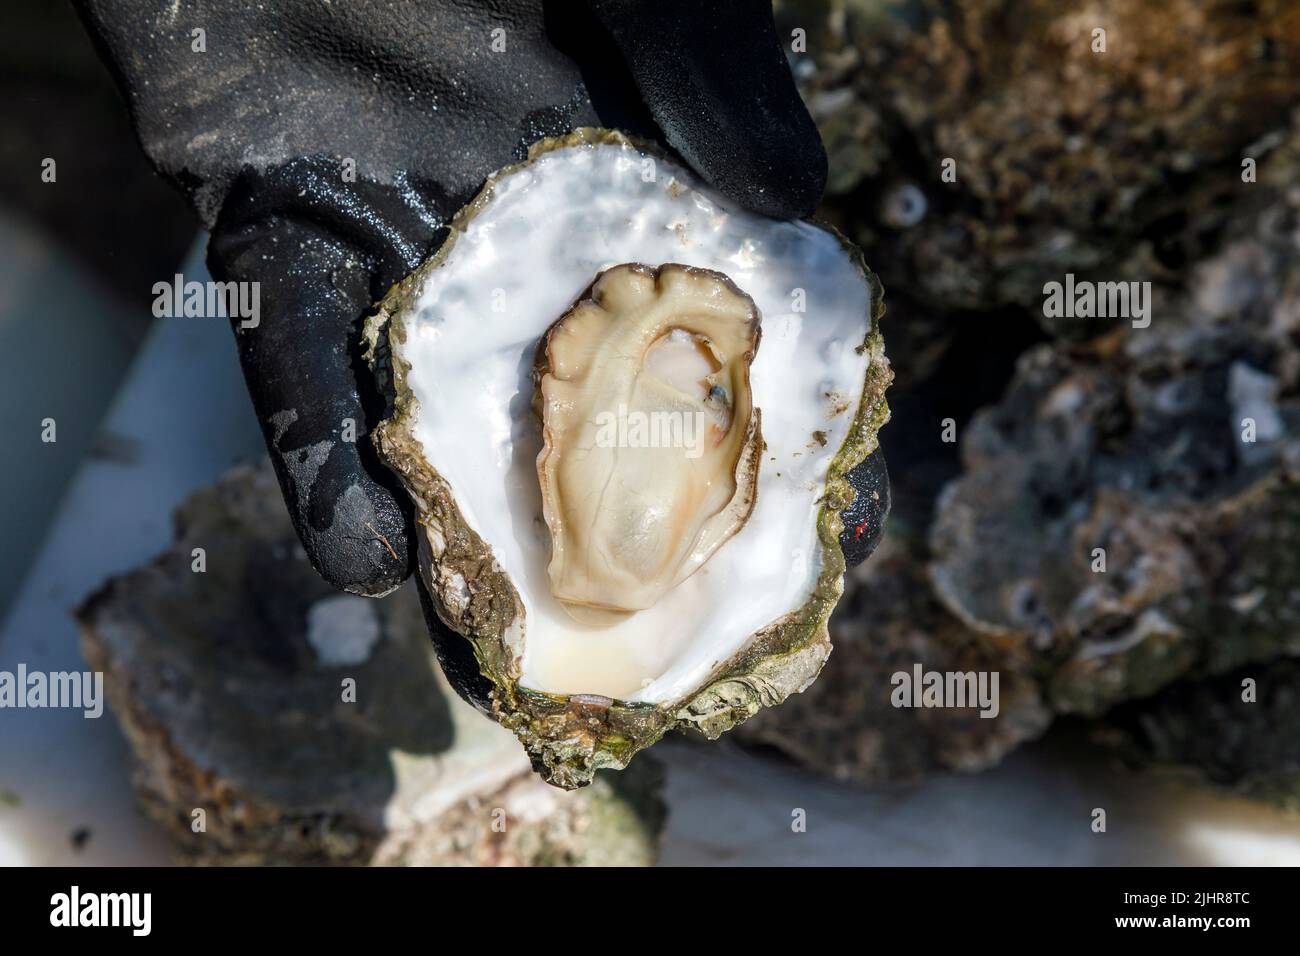 An der Nordsee gesammelte wilde Auster nach dem öffnen Stock Photo